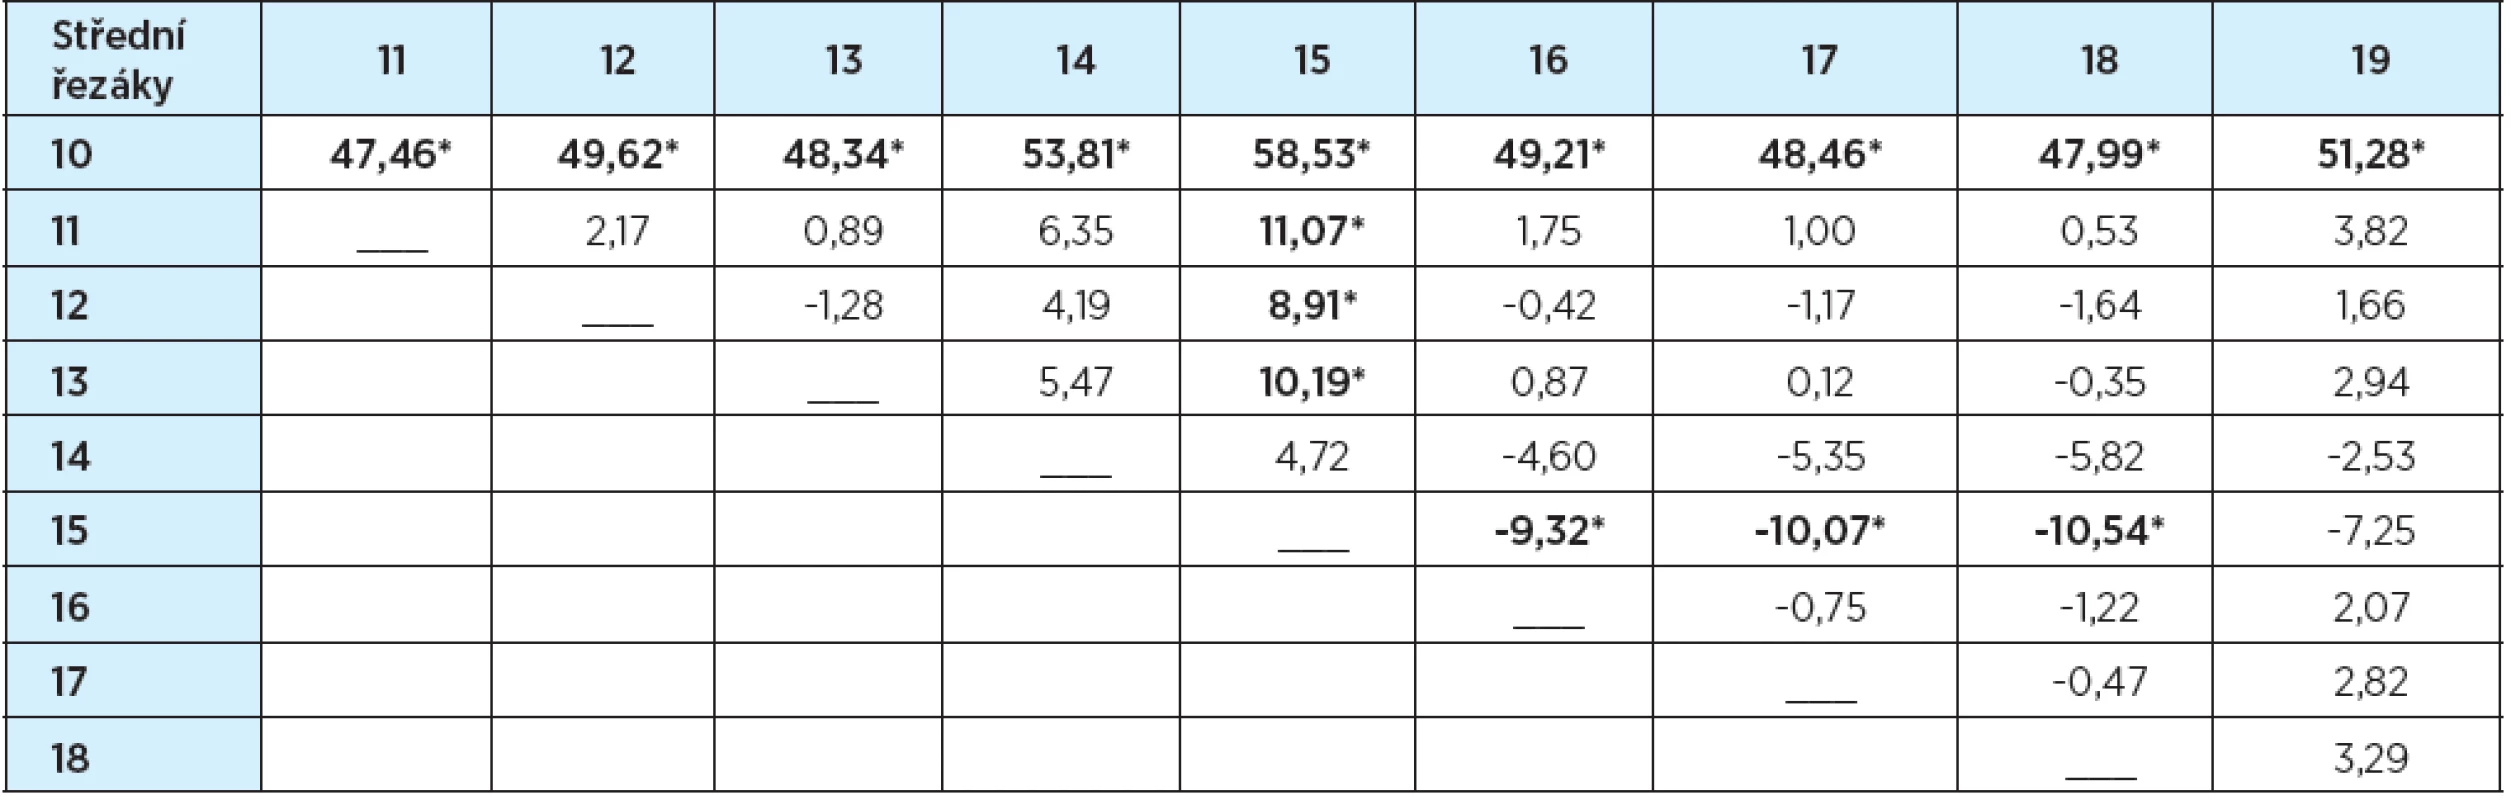 Tvary středních řezáků – rozdíly průměrů hodnocení (%)